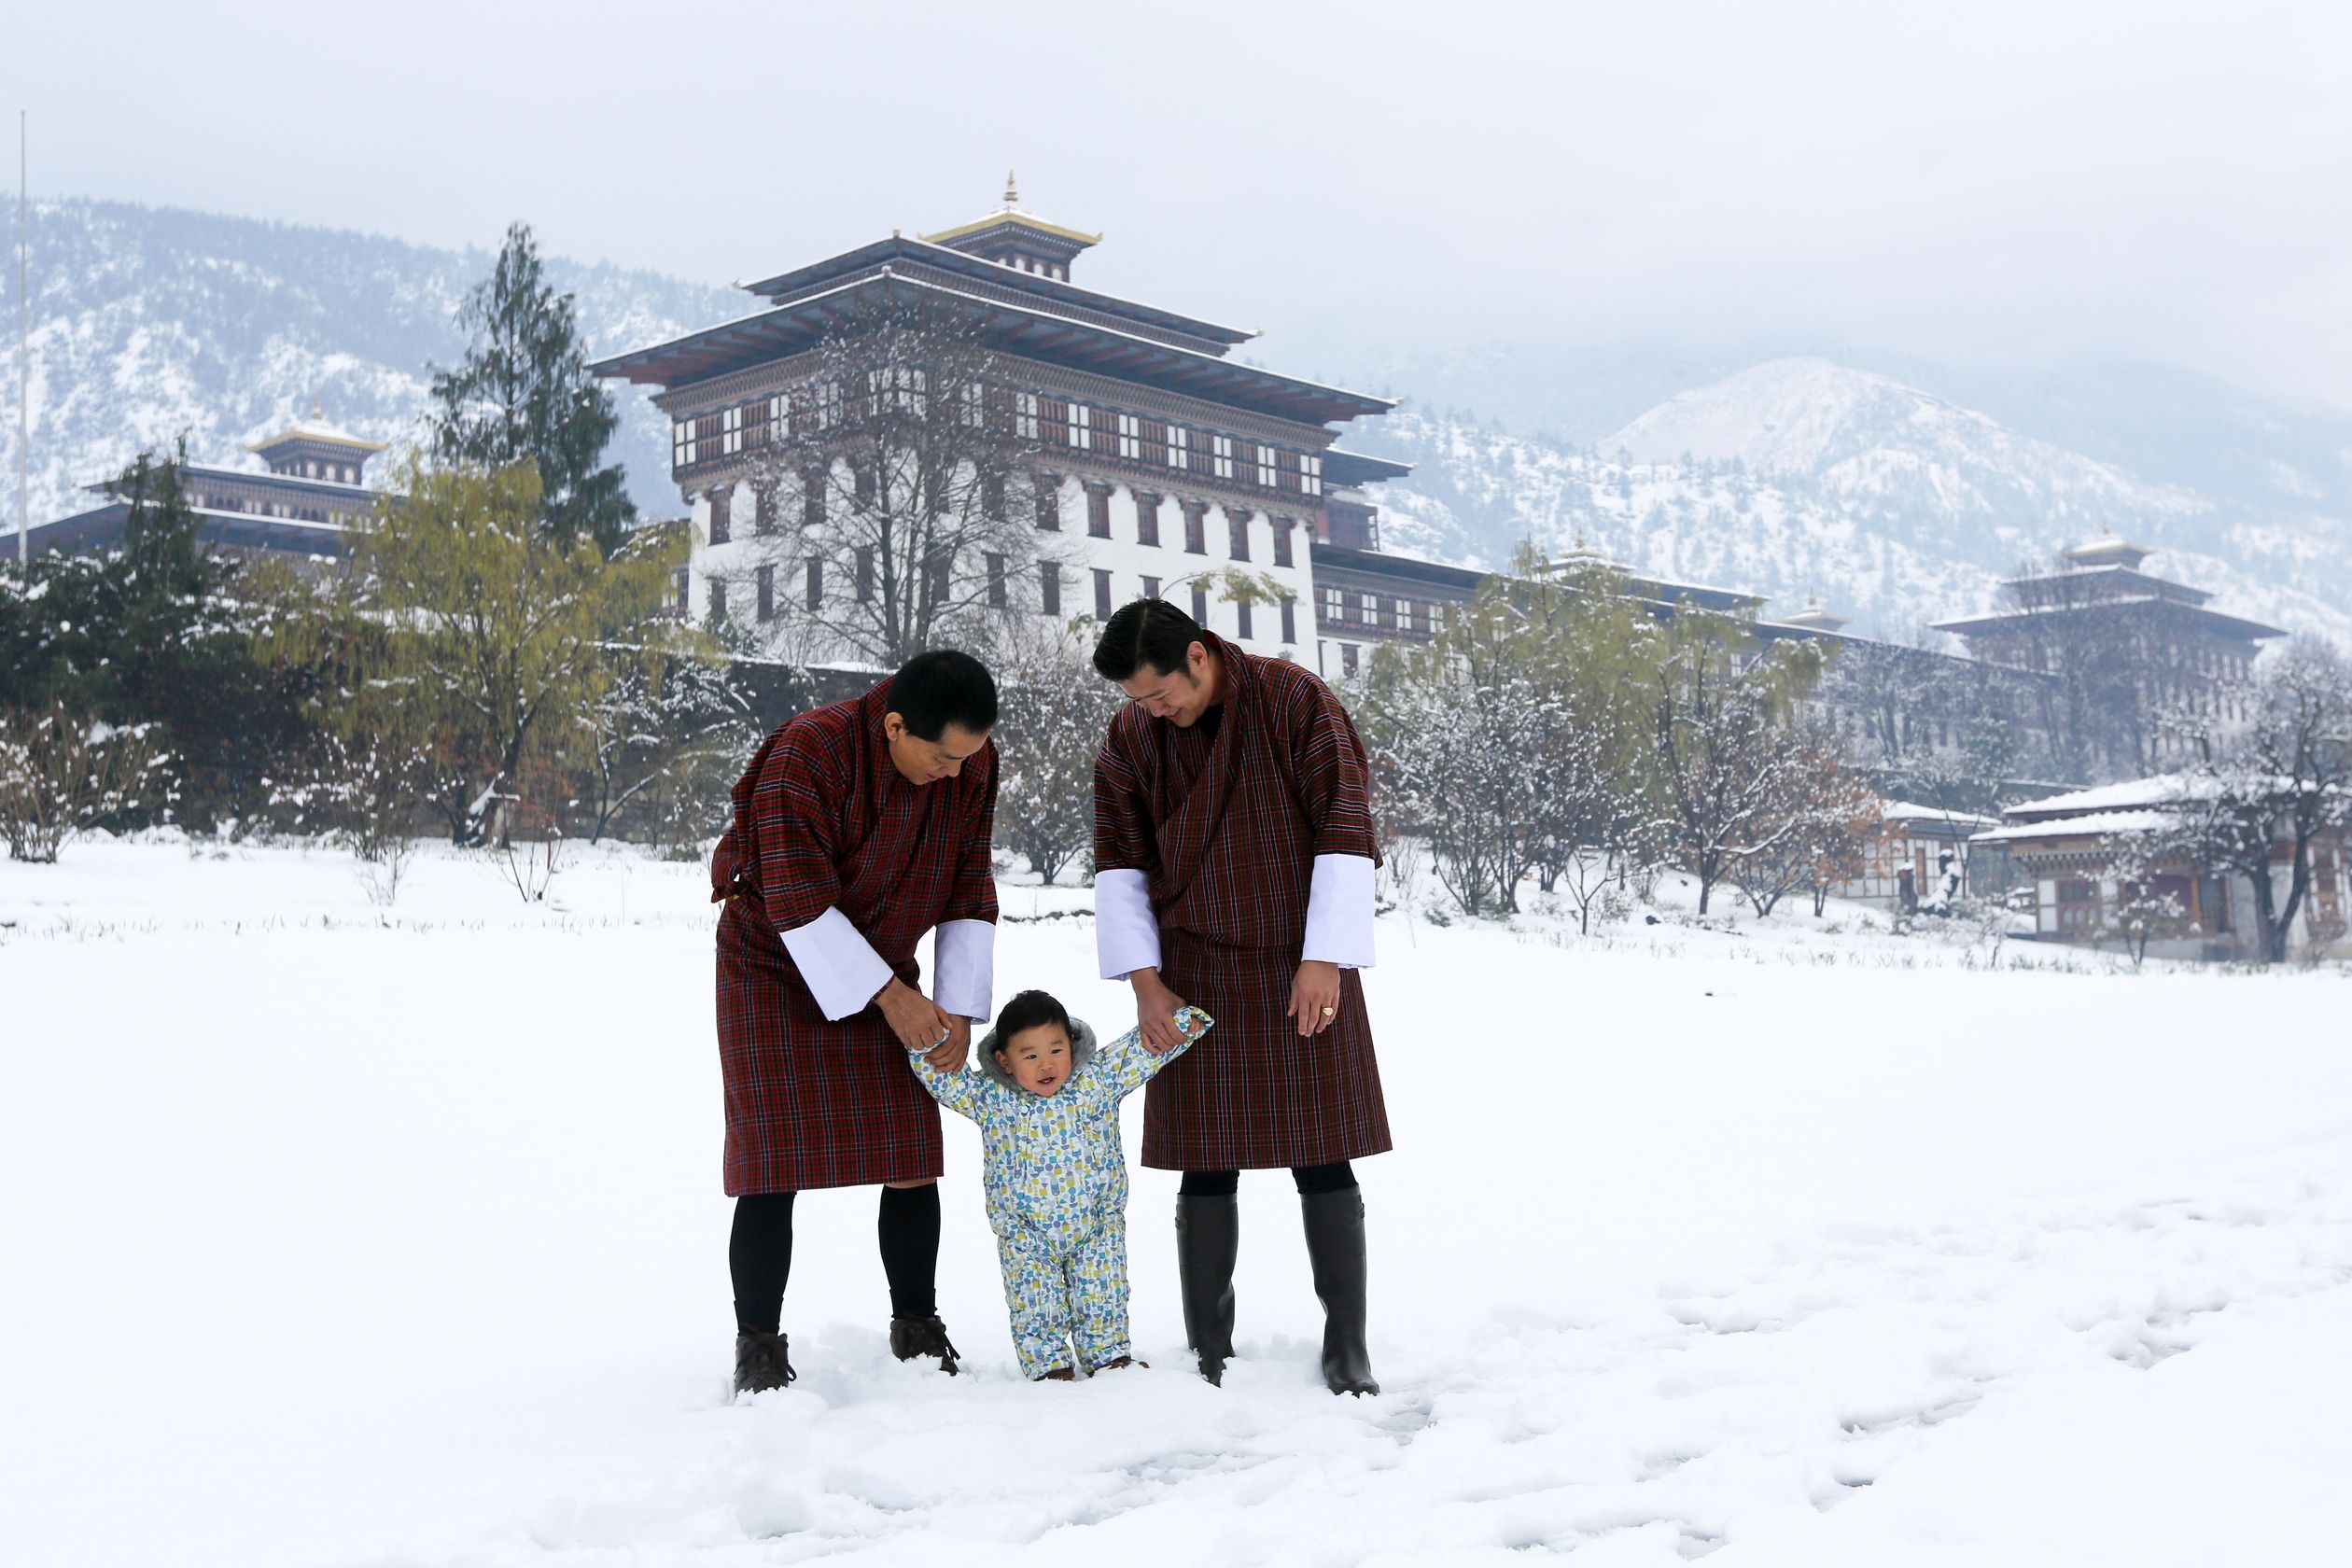 2017: De koning van Bhutan Jigme Khesar Namgyel Wangchuck, de vierde koning van Bhutan Jigme Singye